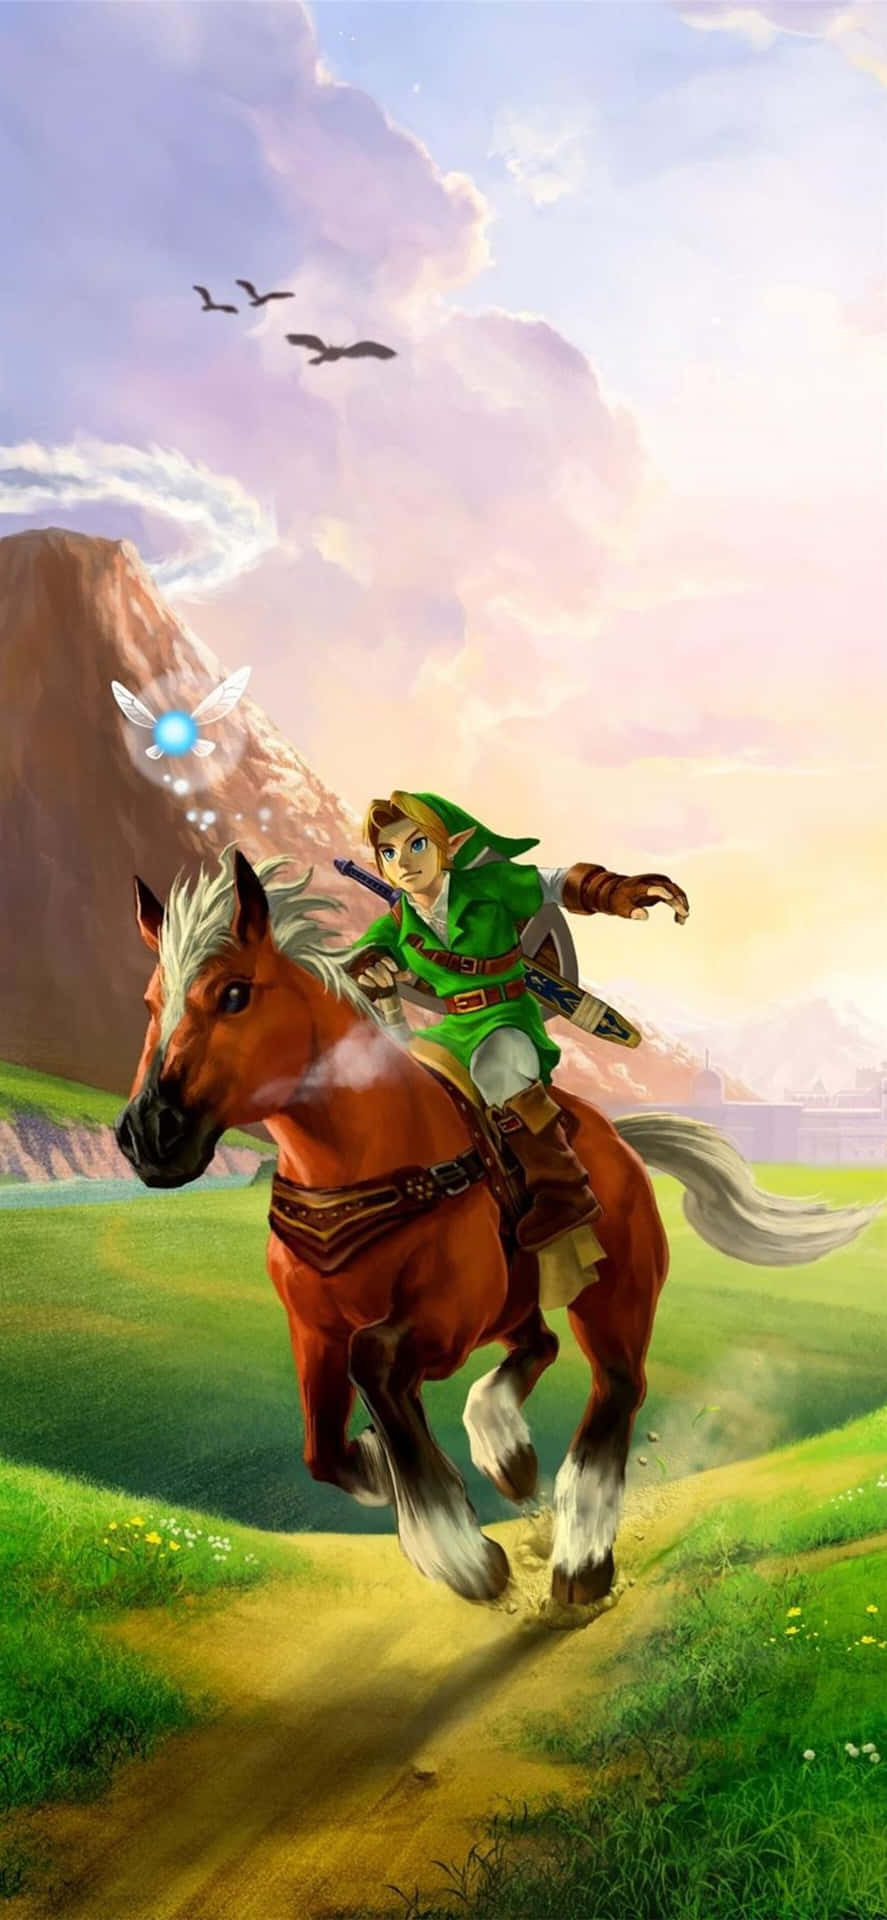 Bleibensie Mit The Legend Of Zelda: Breath Of The Wild Ganz Bequem In Ihrer Tasche Mit Diesem Zelda-handy In Verbindung. Wallpaper